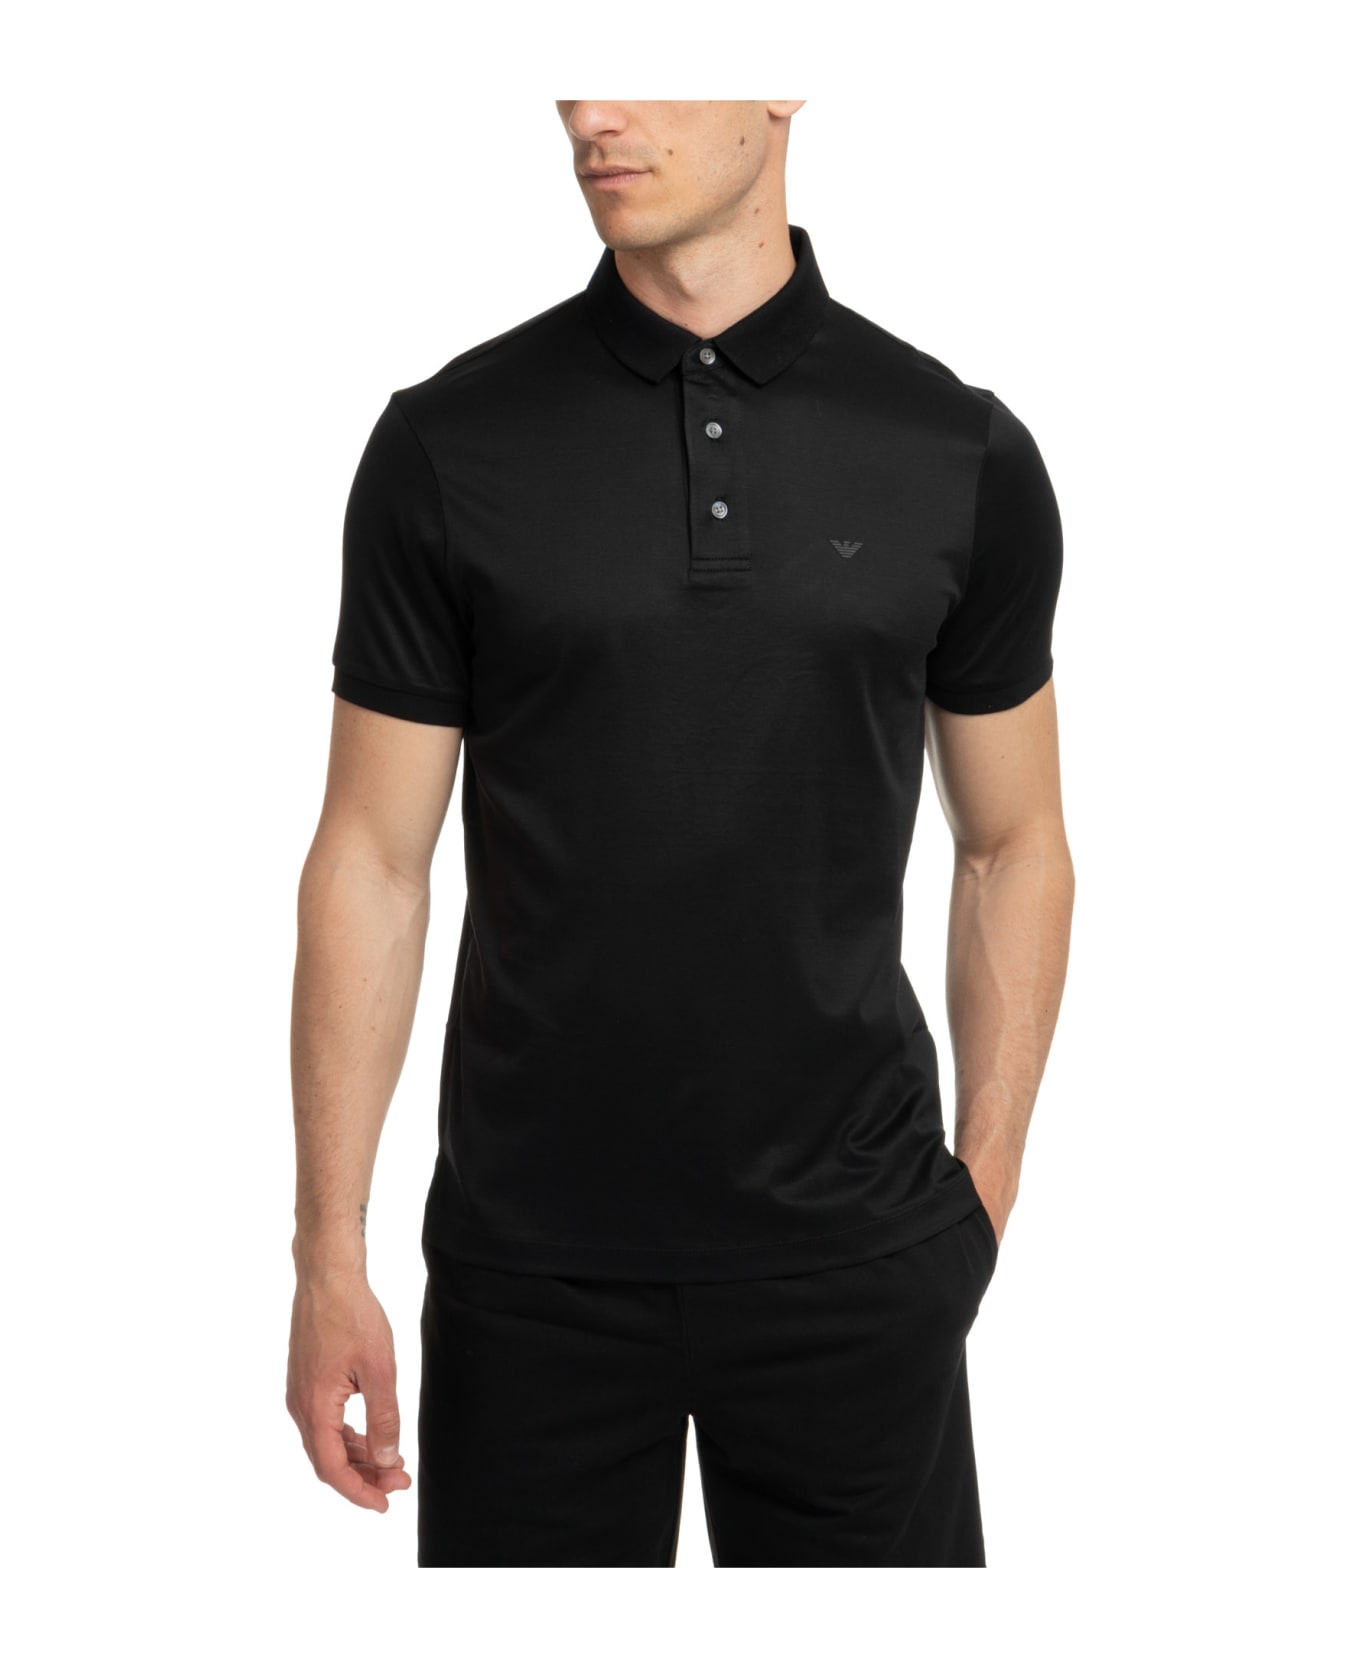 Emporio Armani Cotton Polo Shirt - Black